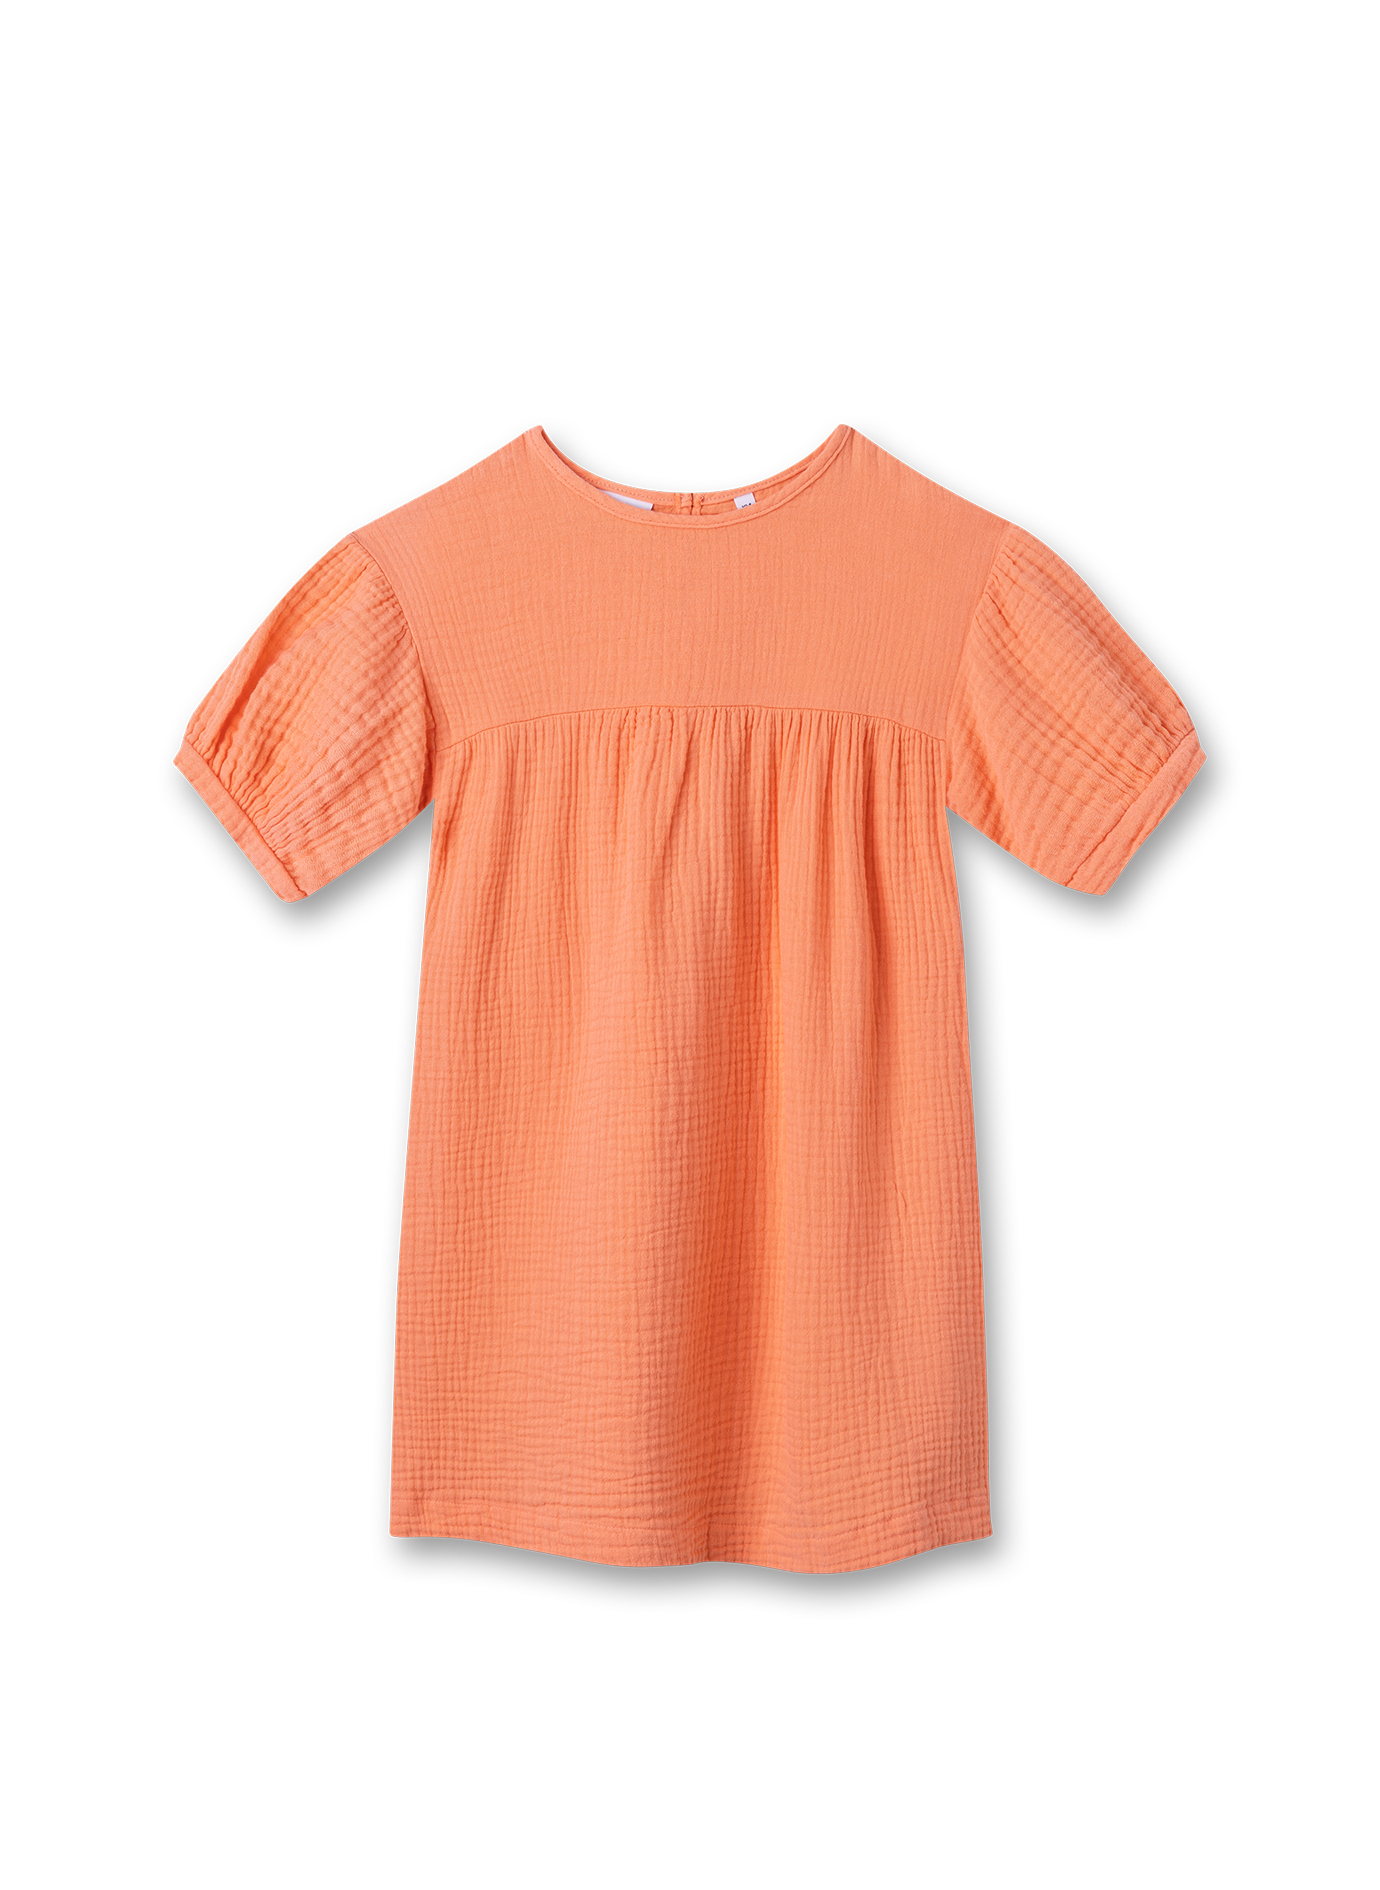 Mädchen-Kleid aus Musselin Orange